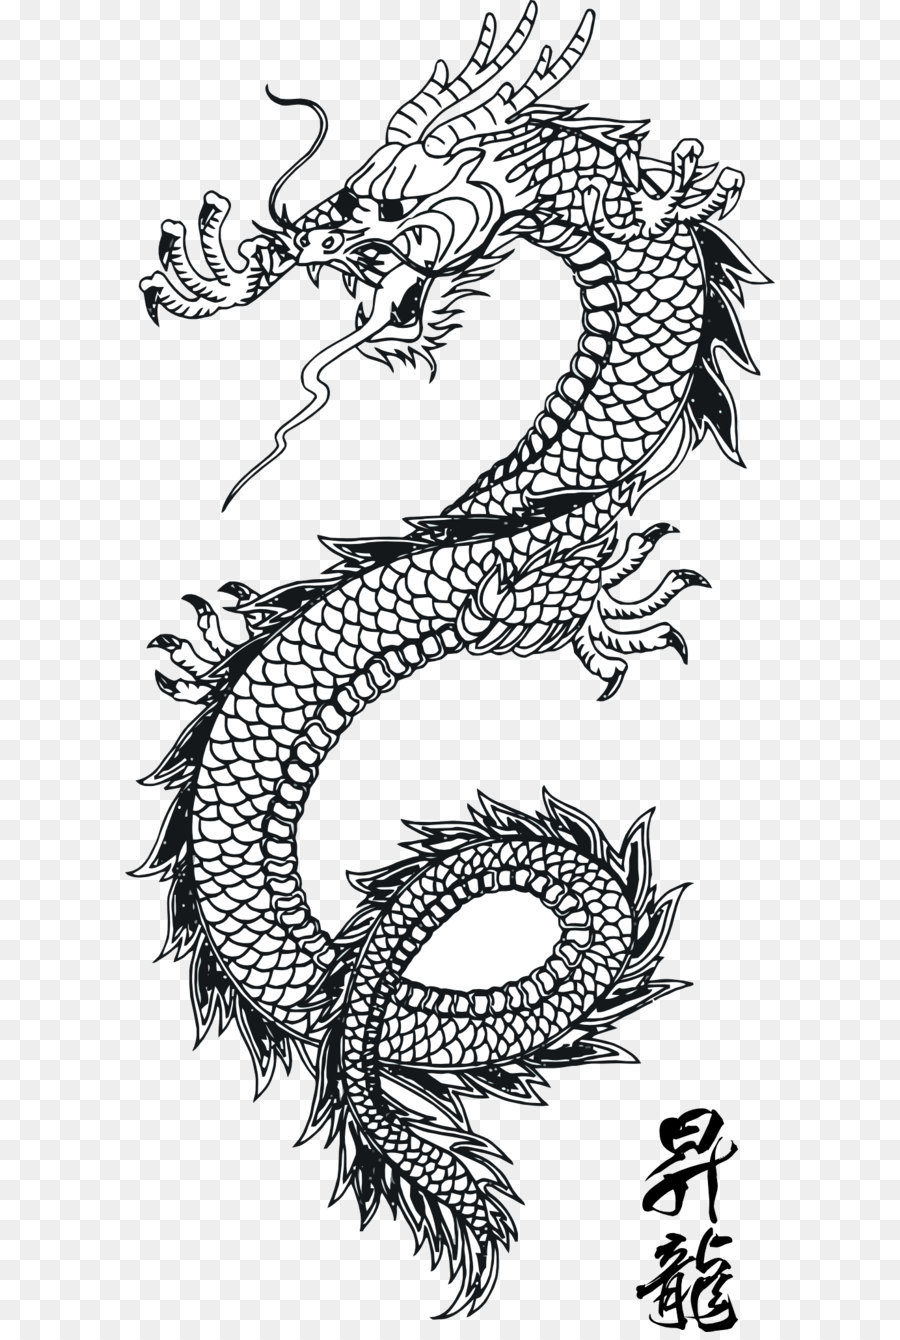 Der japanische Drache, japanische Kunst, chinesische Drachen - Black Dragon Tattoo Png Bilder